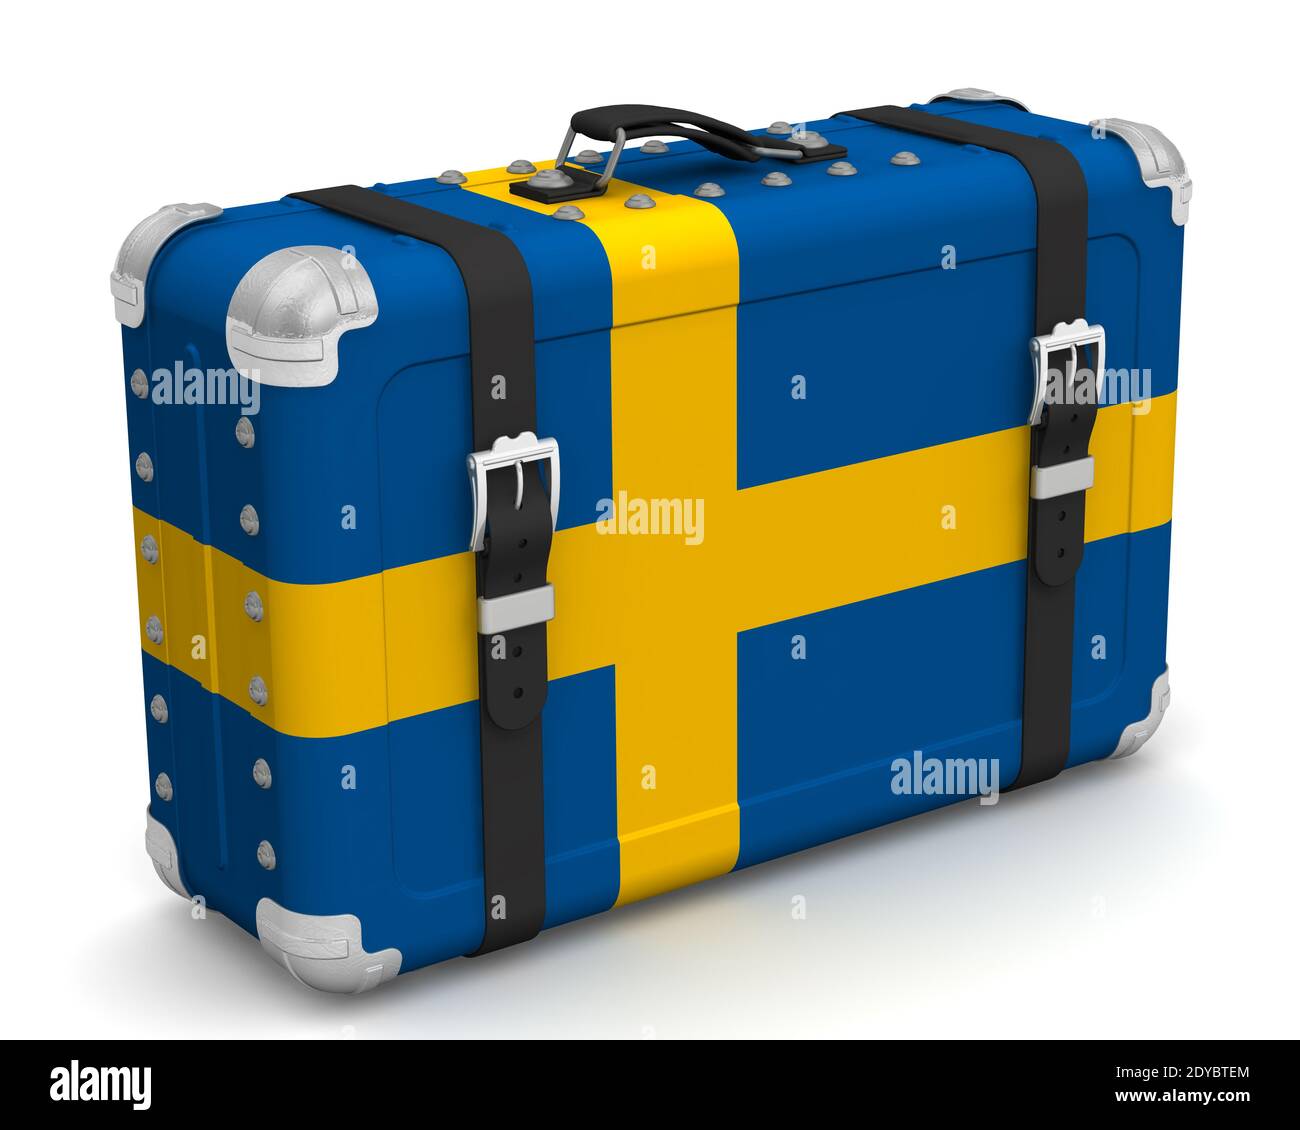 Elegante valigia con la bandiera nazionale svedese. La valigia retrò con la  bandiera nazionale del Regno di Svezia si trova su una superficie bianca  Foto stock - Alamy